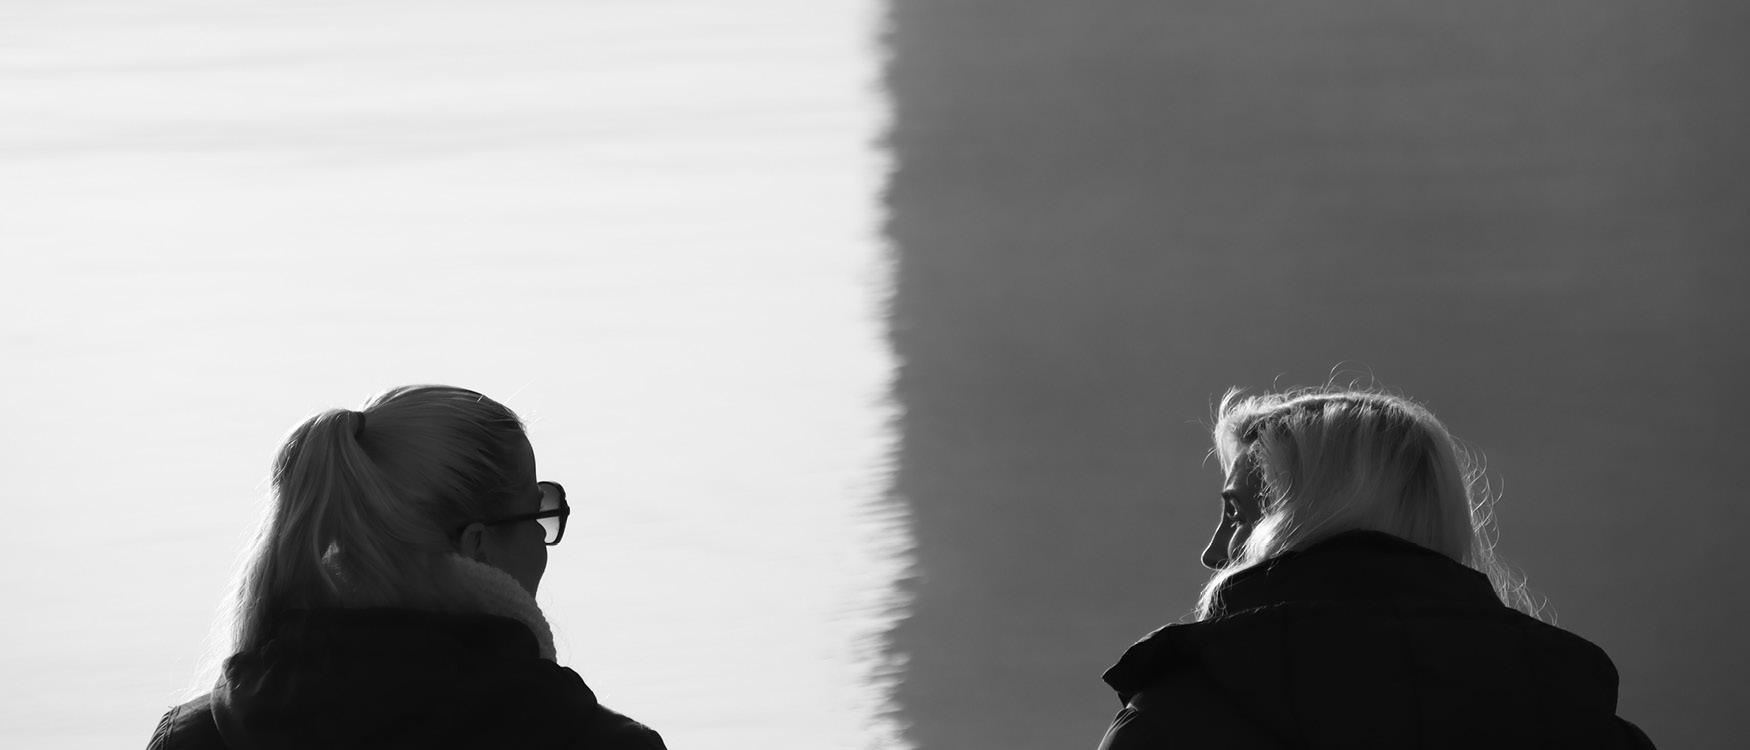 mustavalkoisessa valokuvassa kaksi naista juttelemassa ulkona veden äärellä selin kameraan.